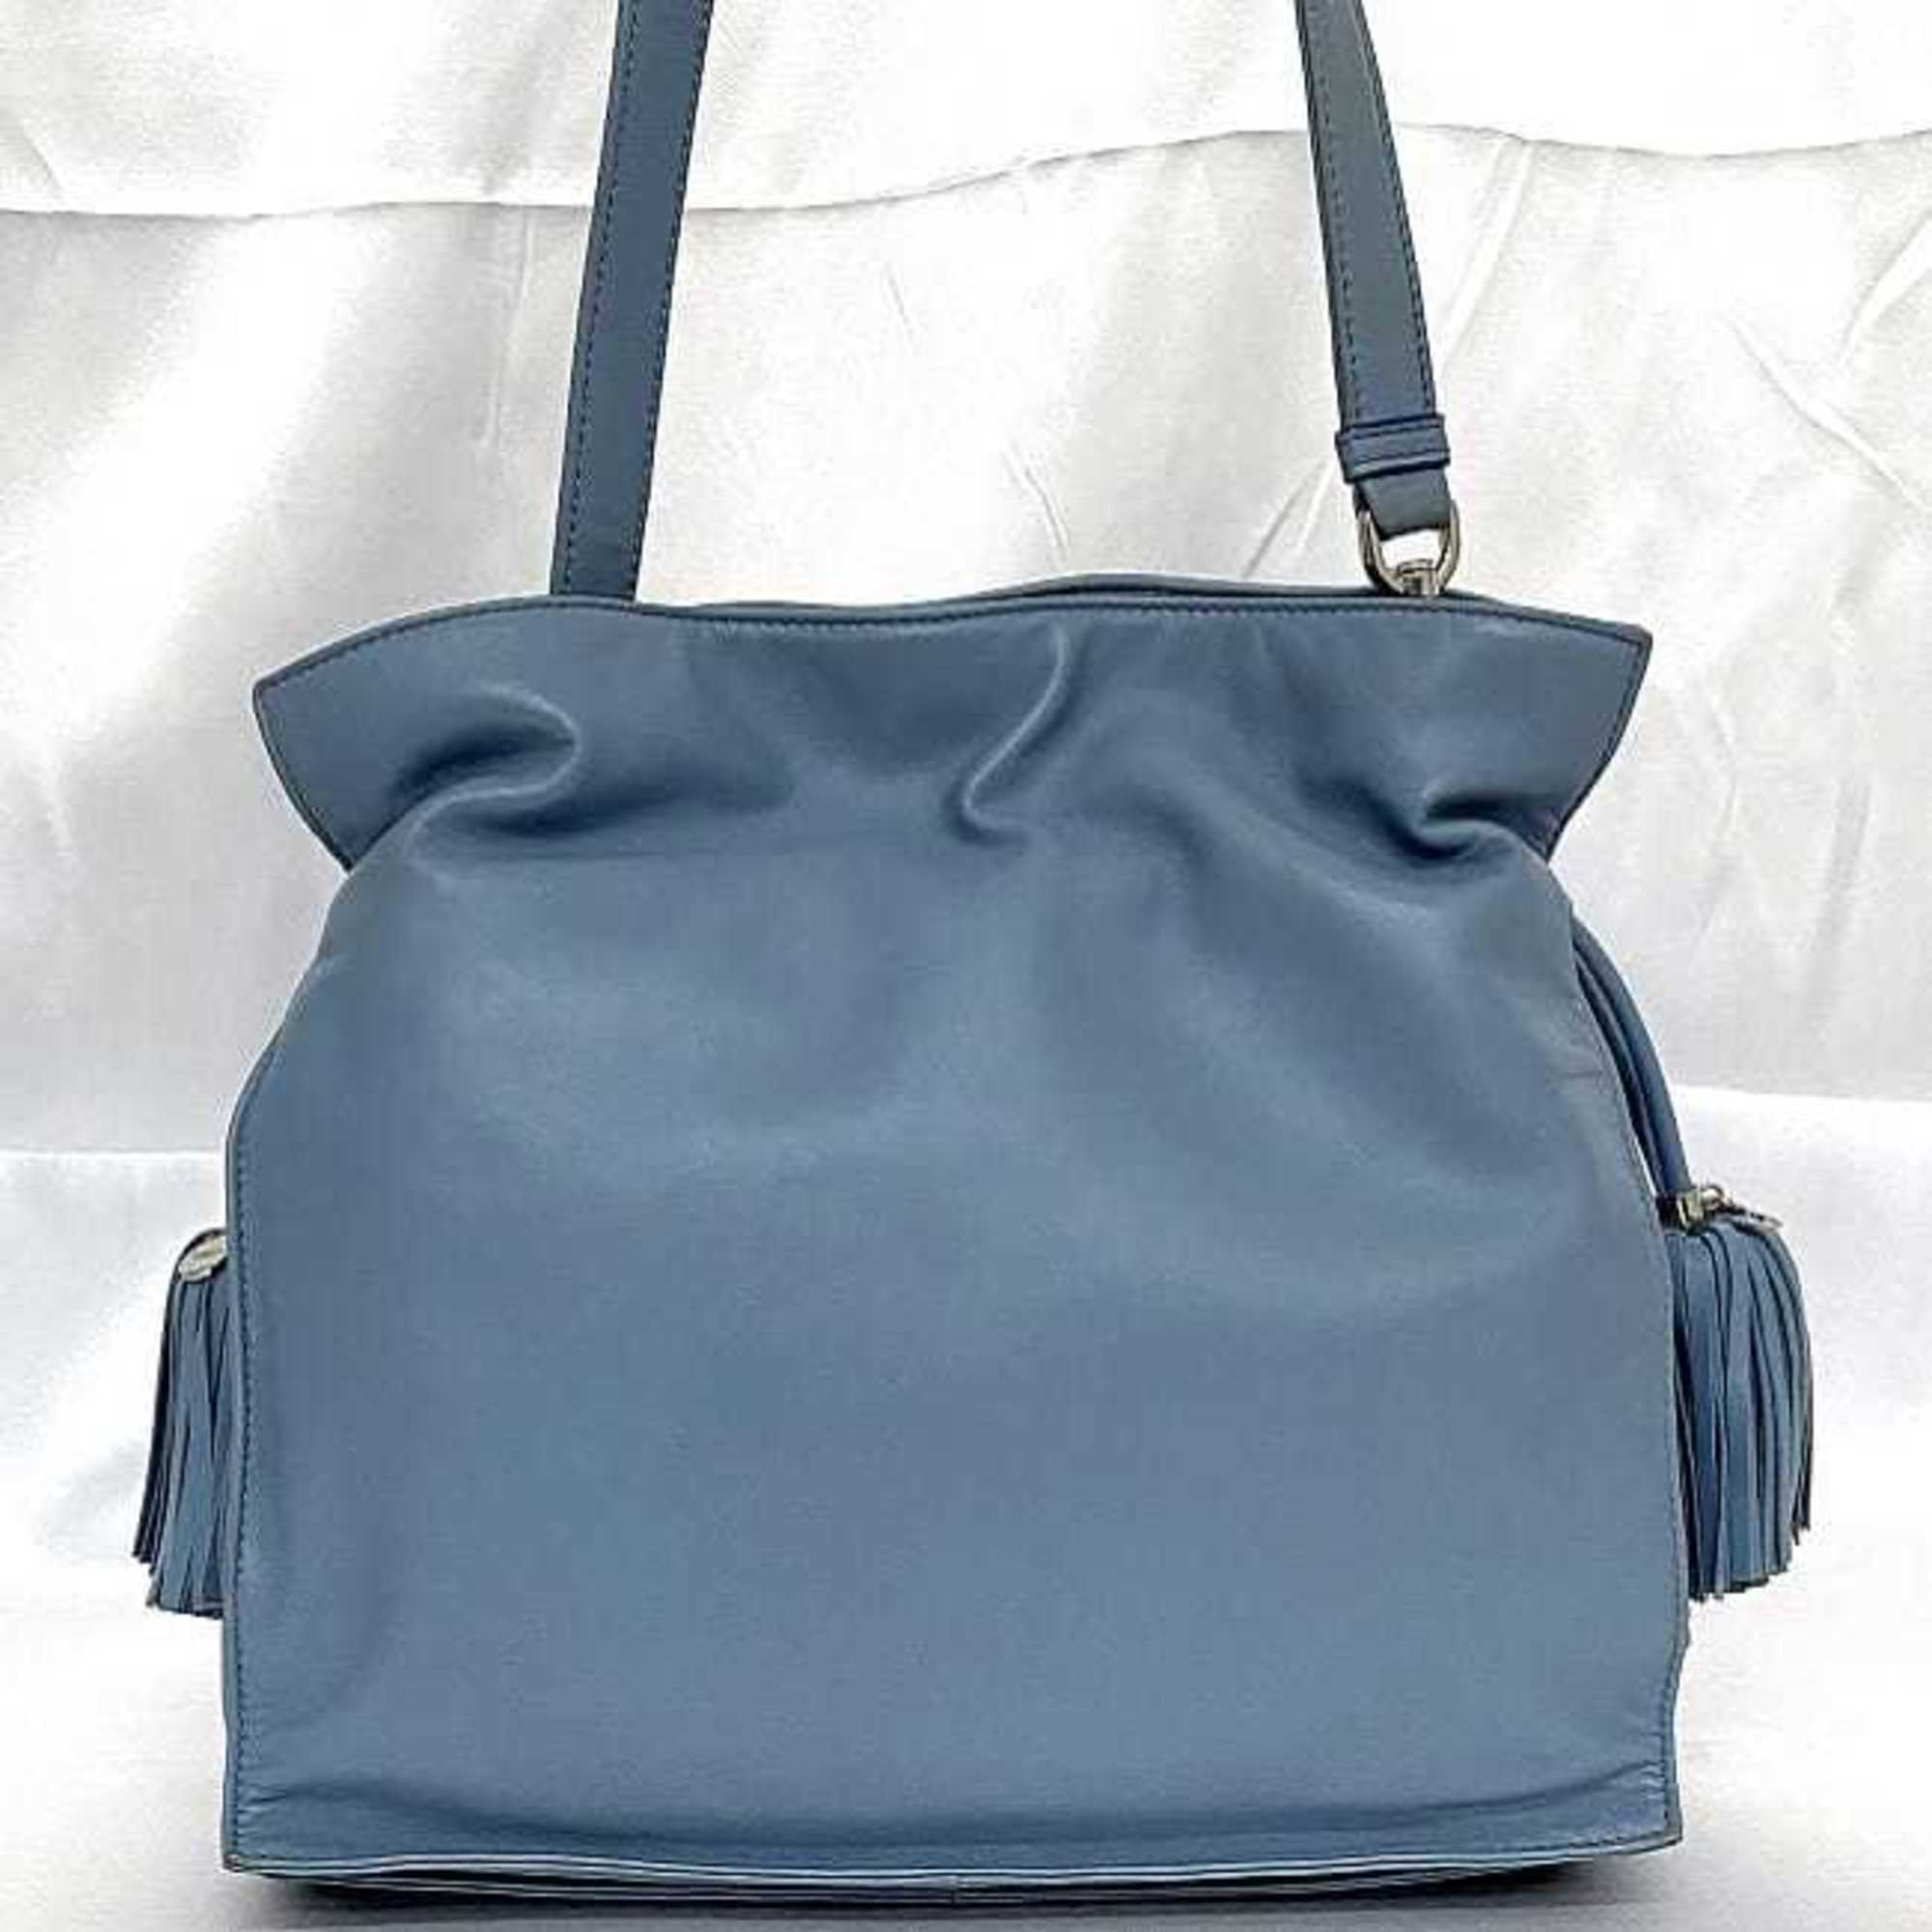 LOEWE Flamenco Shoulder Bag Light Blue Anagram Leather Nappa Tassel 2way Soft